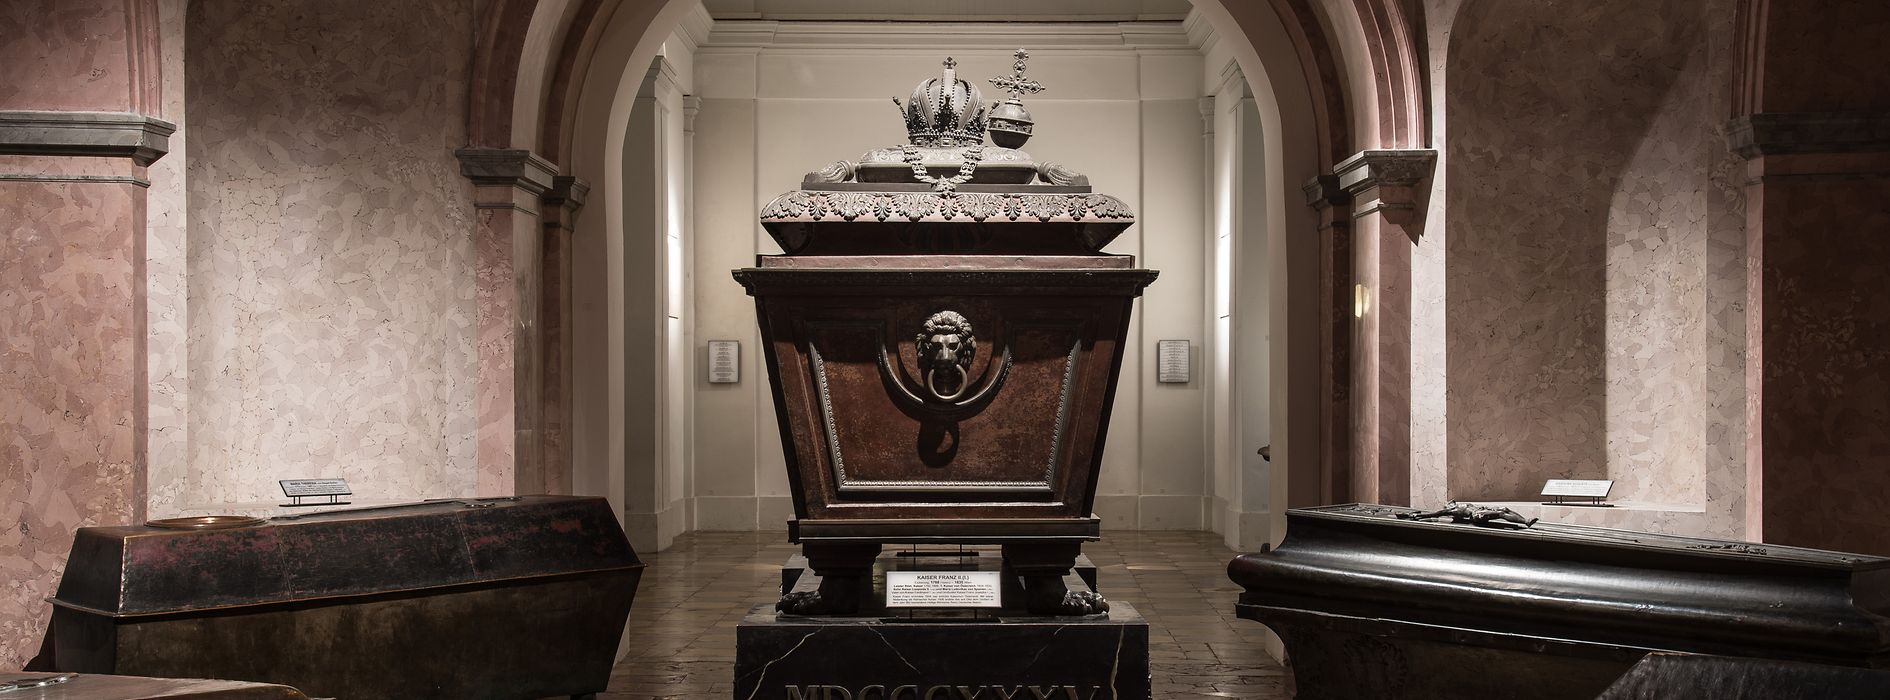 Cercueils dans une salle, cercueil avec couronne et orbe crucigère